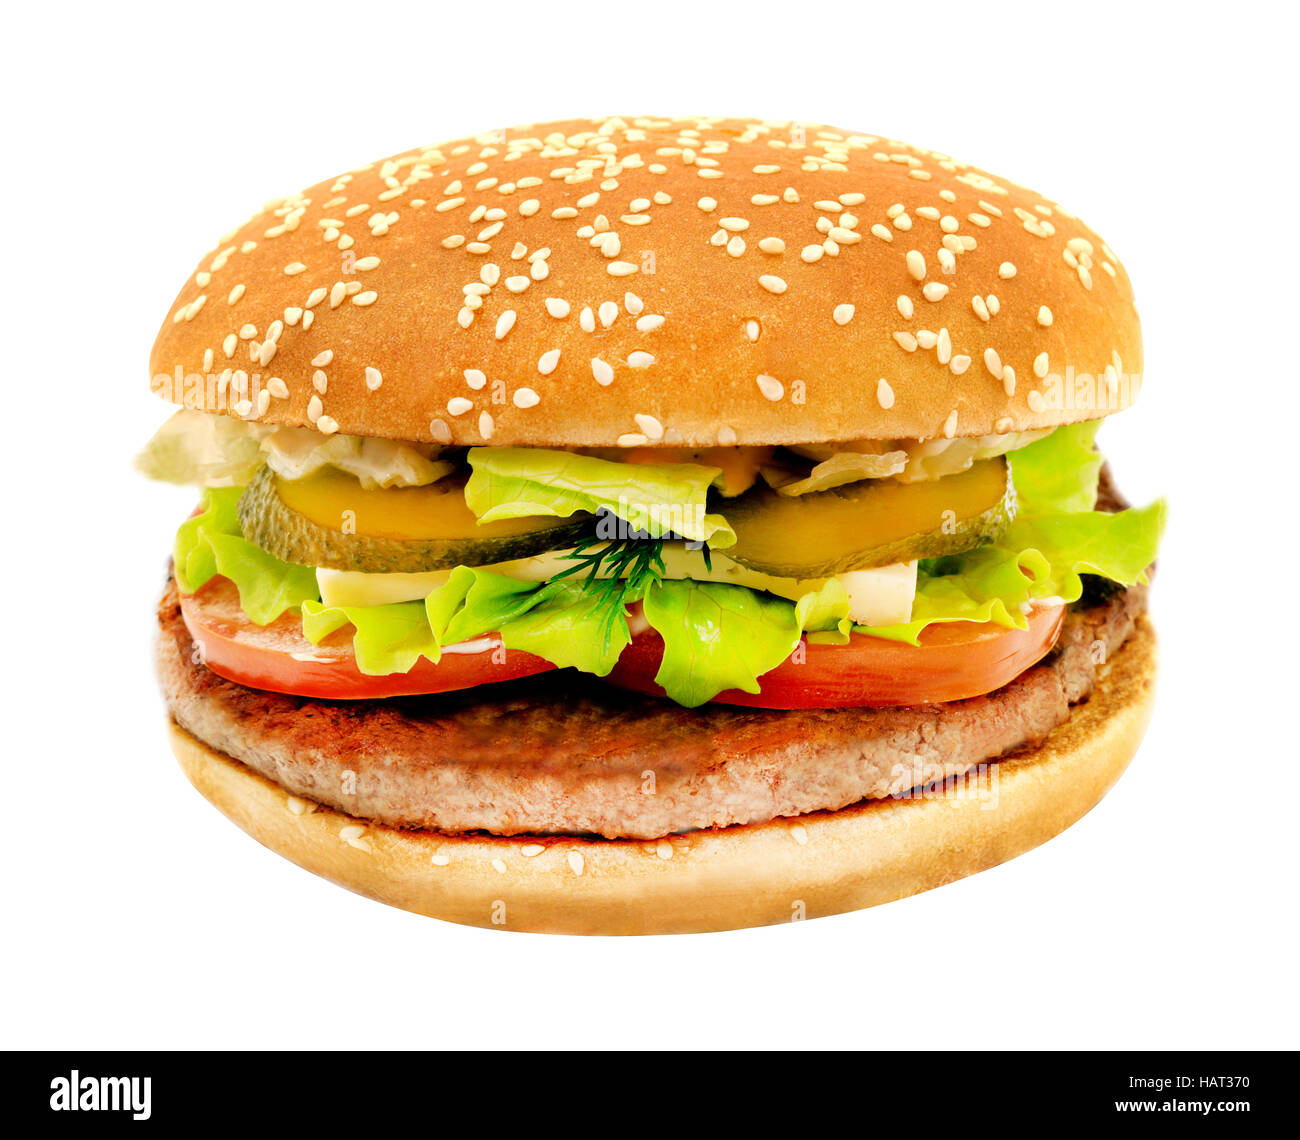 Photos tasty big burger isolated on white background Stock Photo